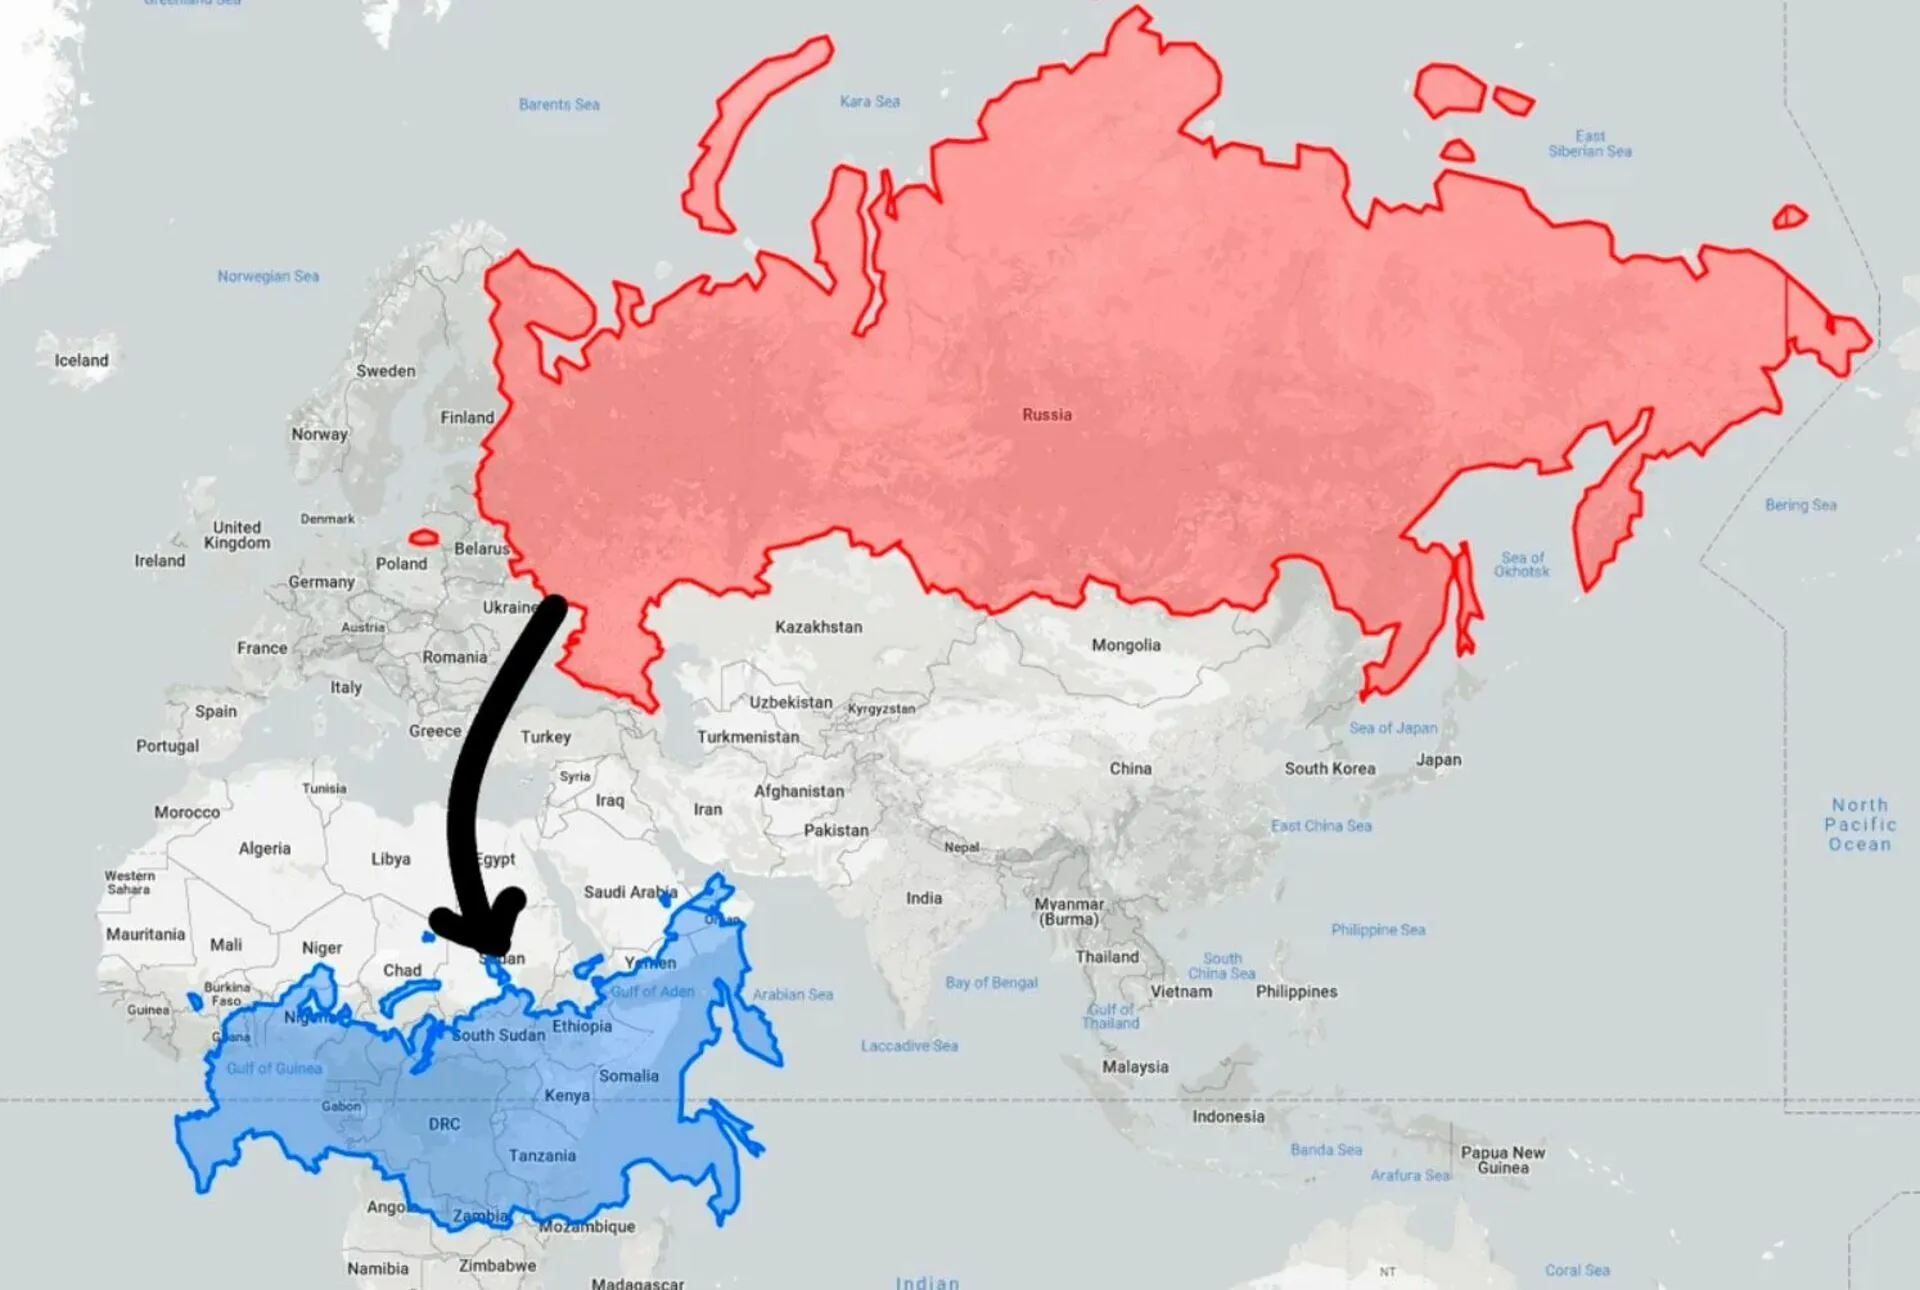 Оставленные территории россией. Украина по сравнению с Россией. Посия пр сравнению с Укра ино. Реальная карта России. Украина по сравнению с Россией на карте.